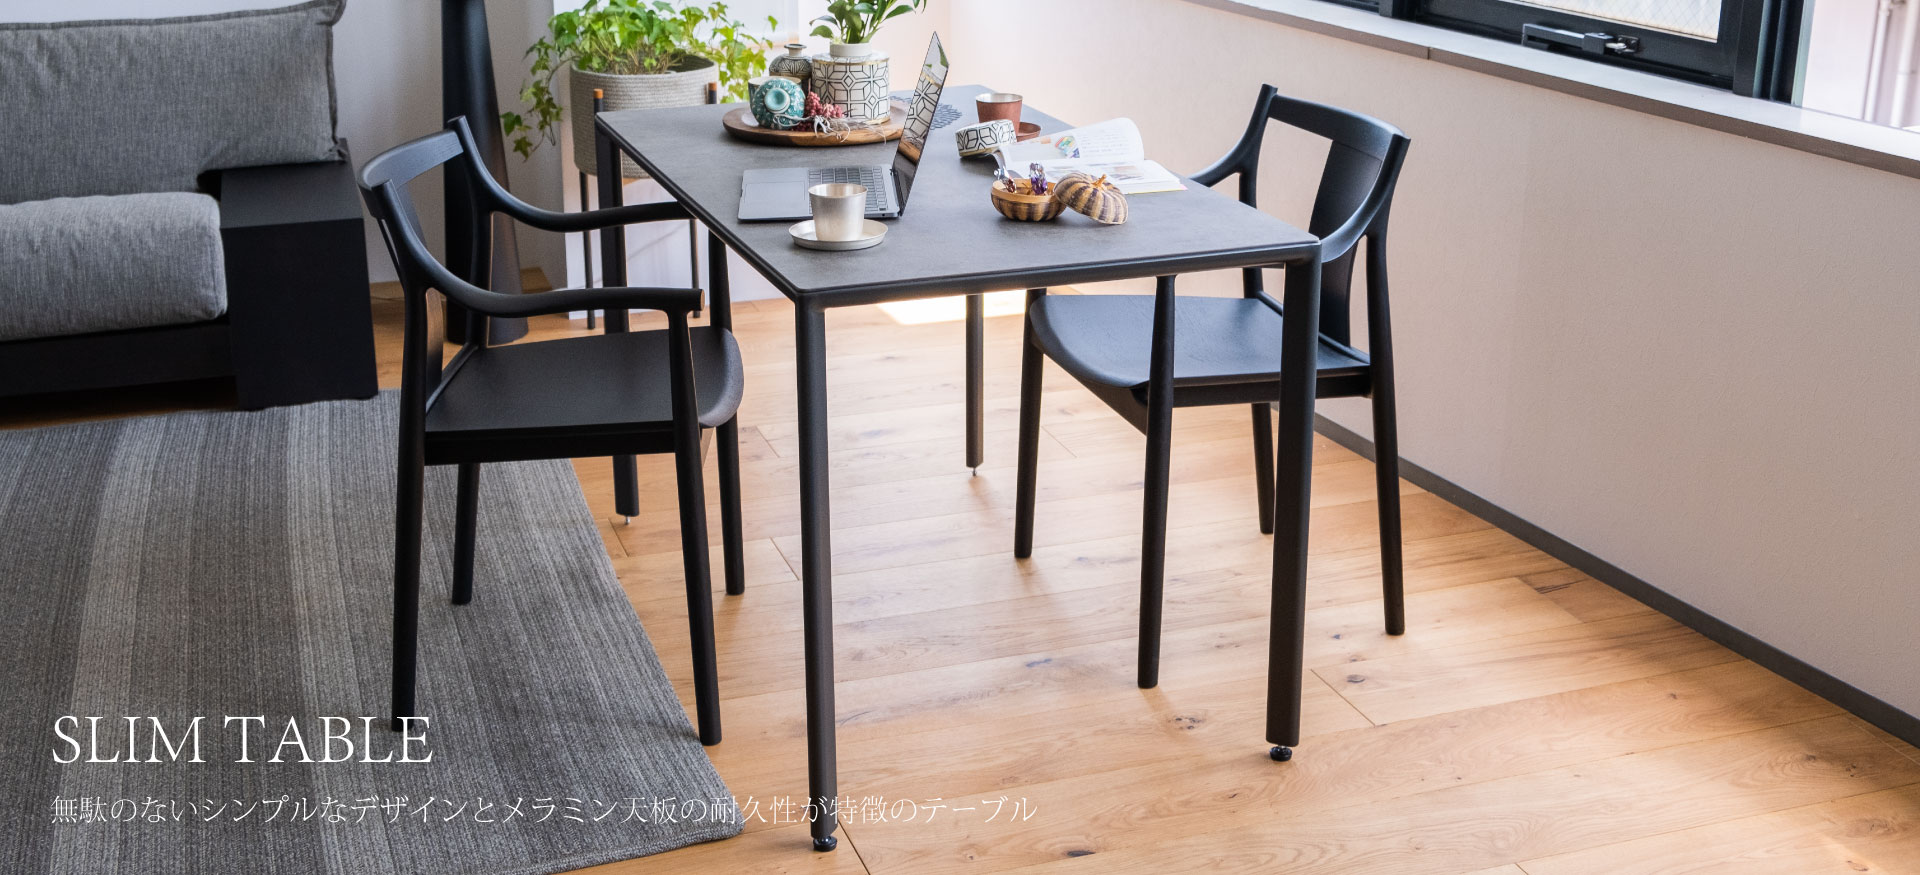 SLIM TABLE無駄のないシンプルなデザインとメラミン天板の耐久性が特徴のテーブル